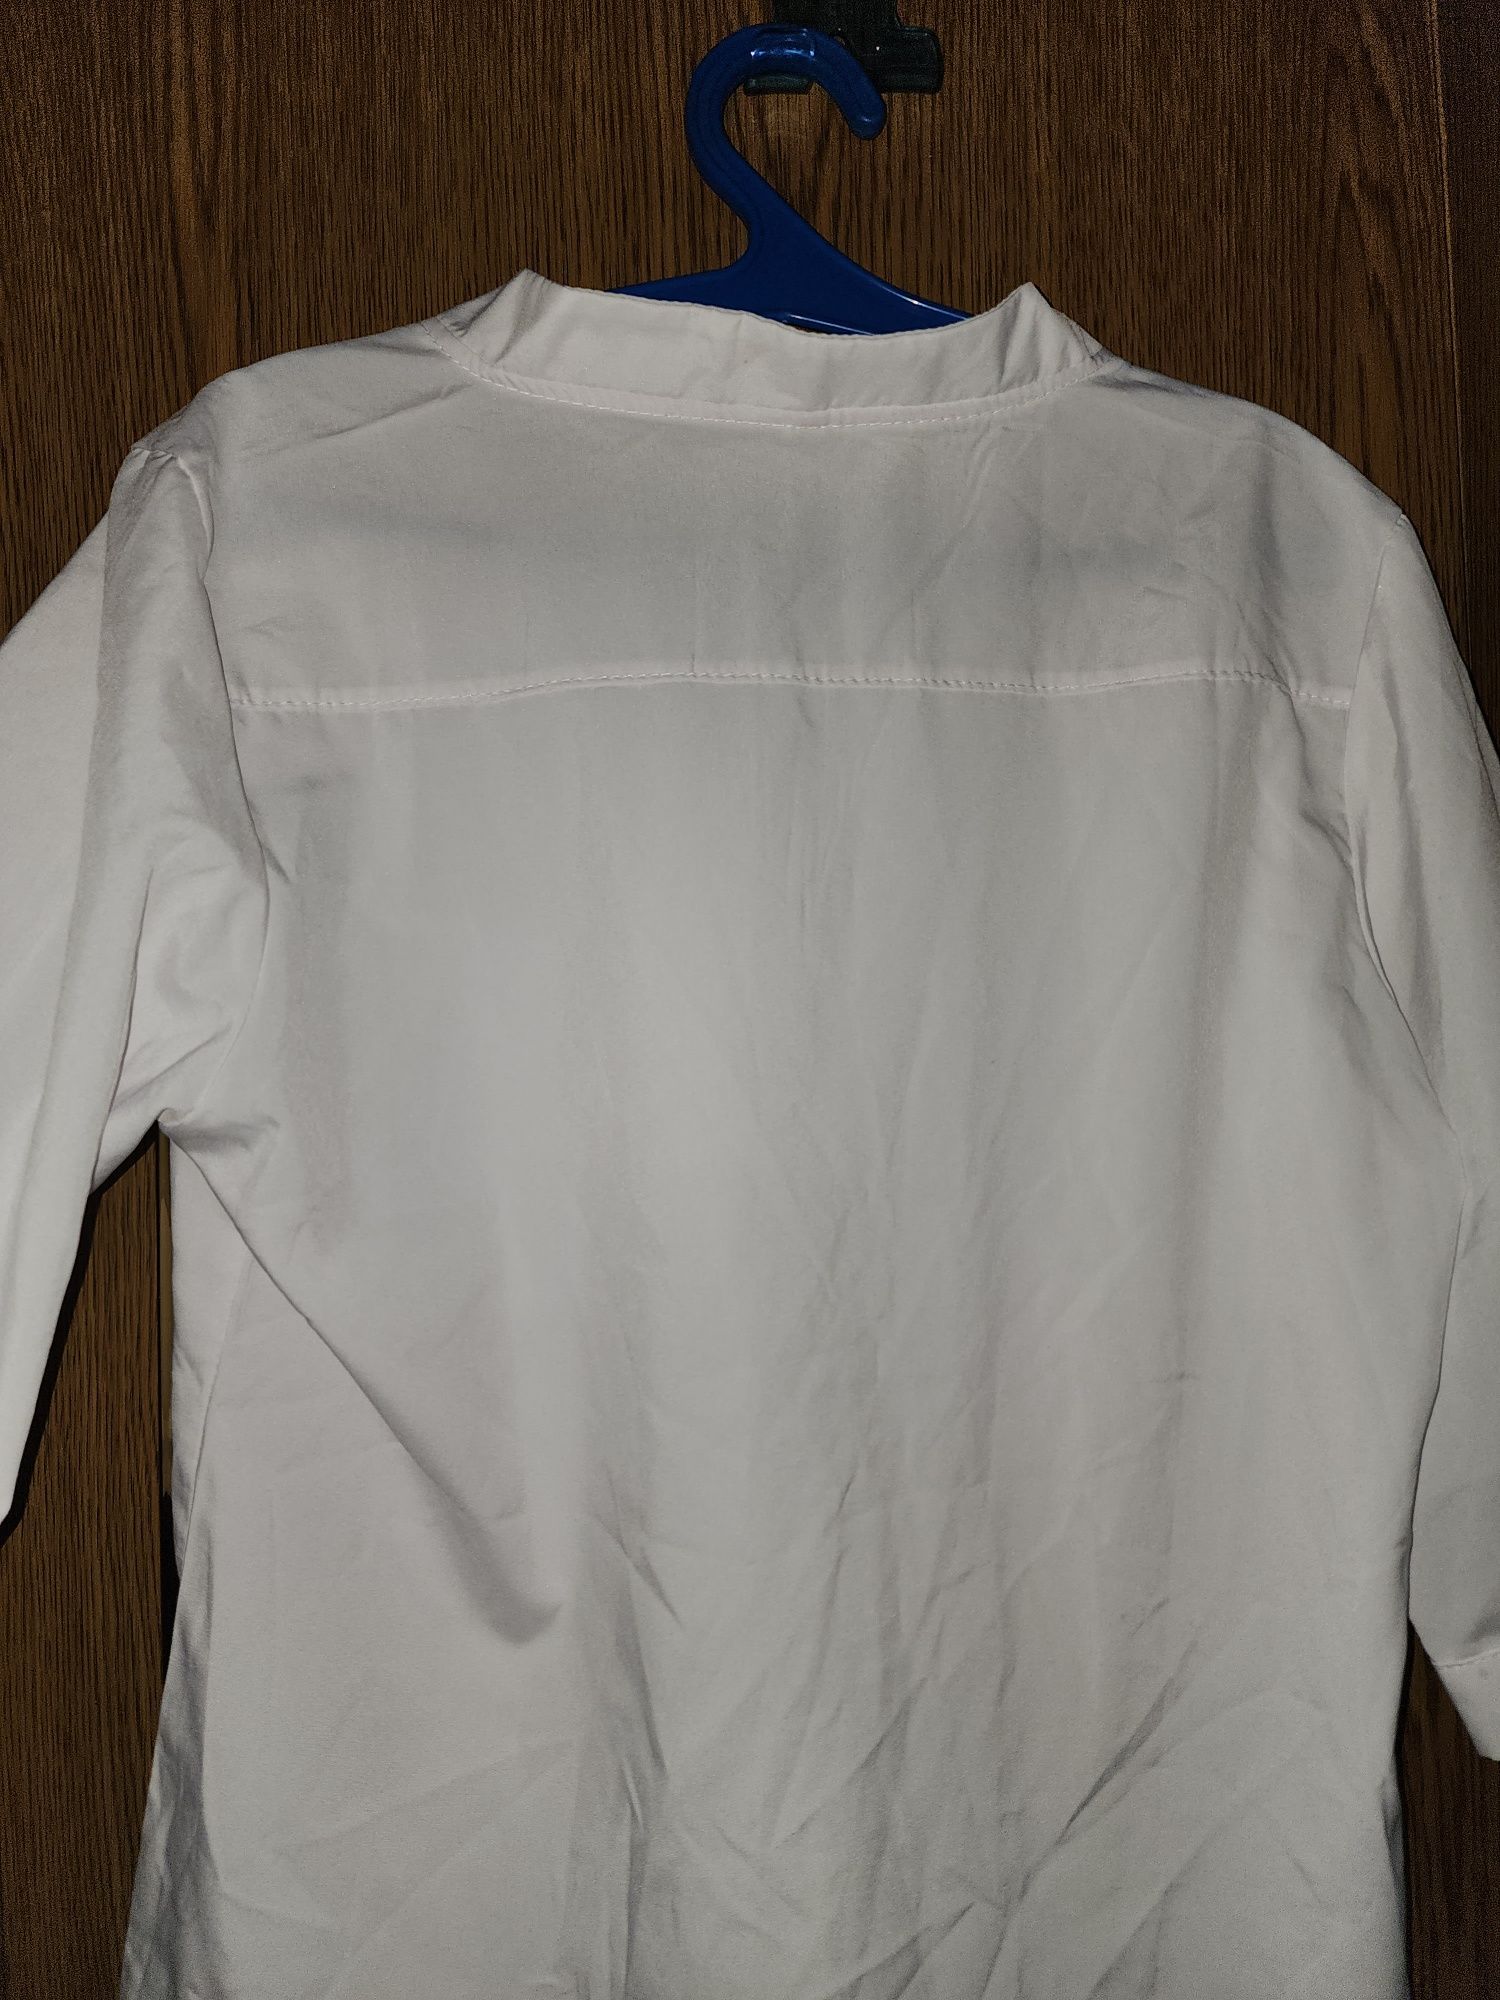 Белая блузка новая приятный материал размер 38-40